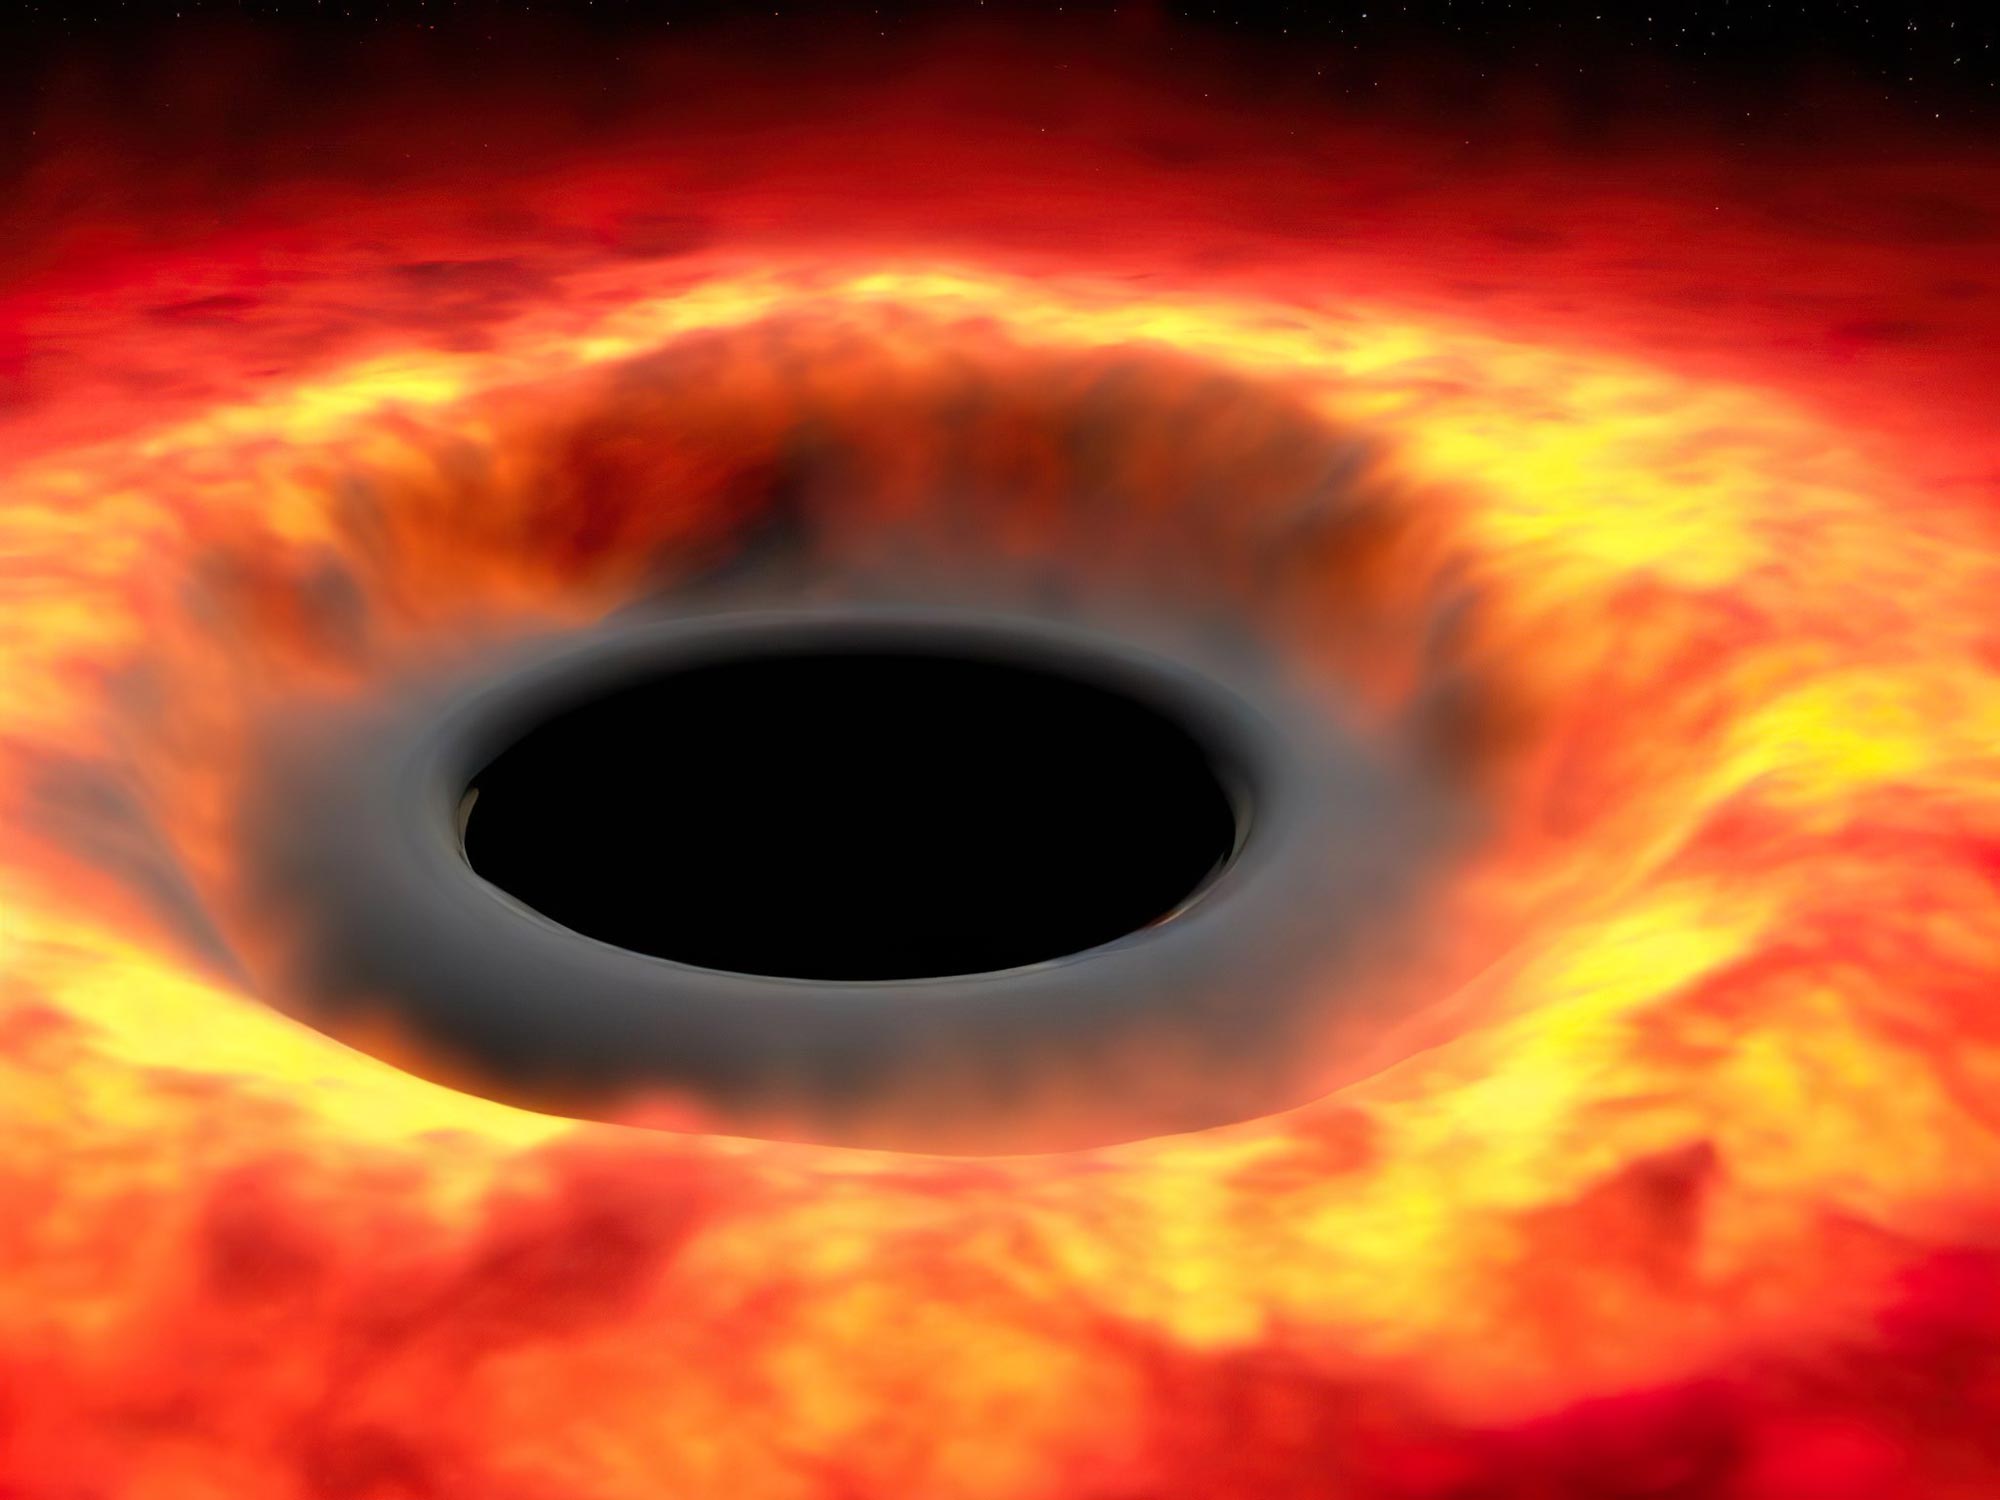 Evrendeki her şey buharlaşmaya mahkumdur – Hawking’in radyasyon teorisi kara deliklerle sınırlı değildir.